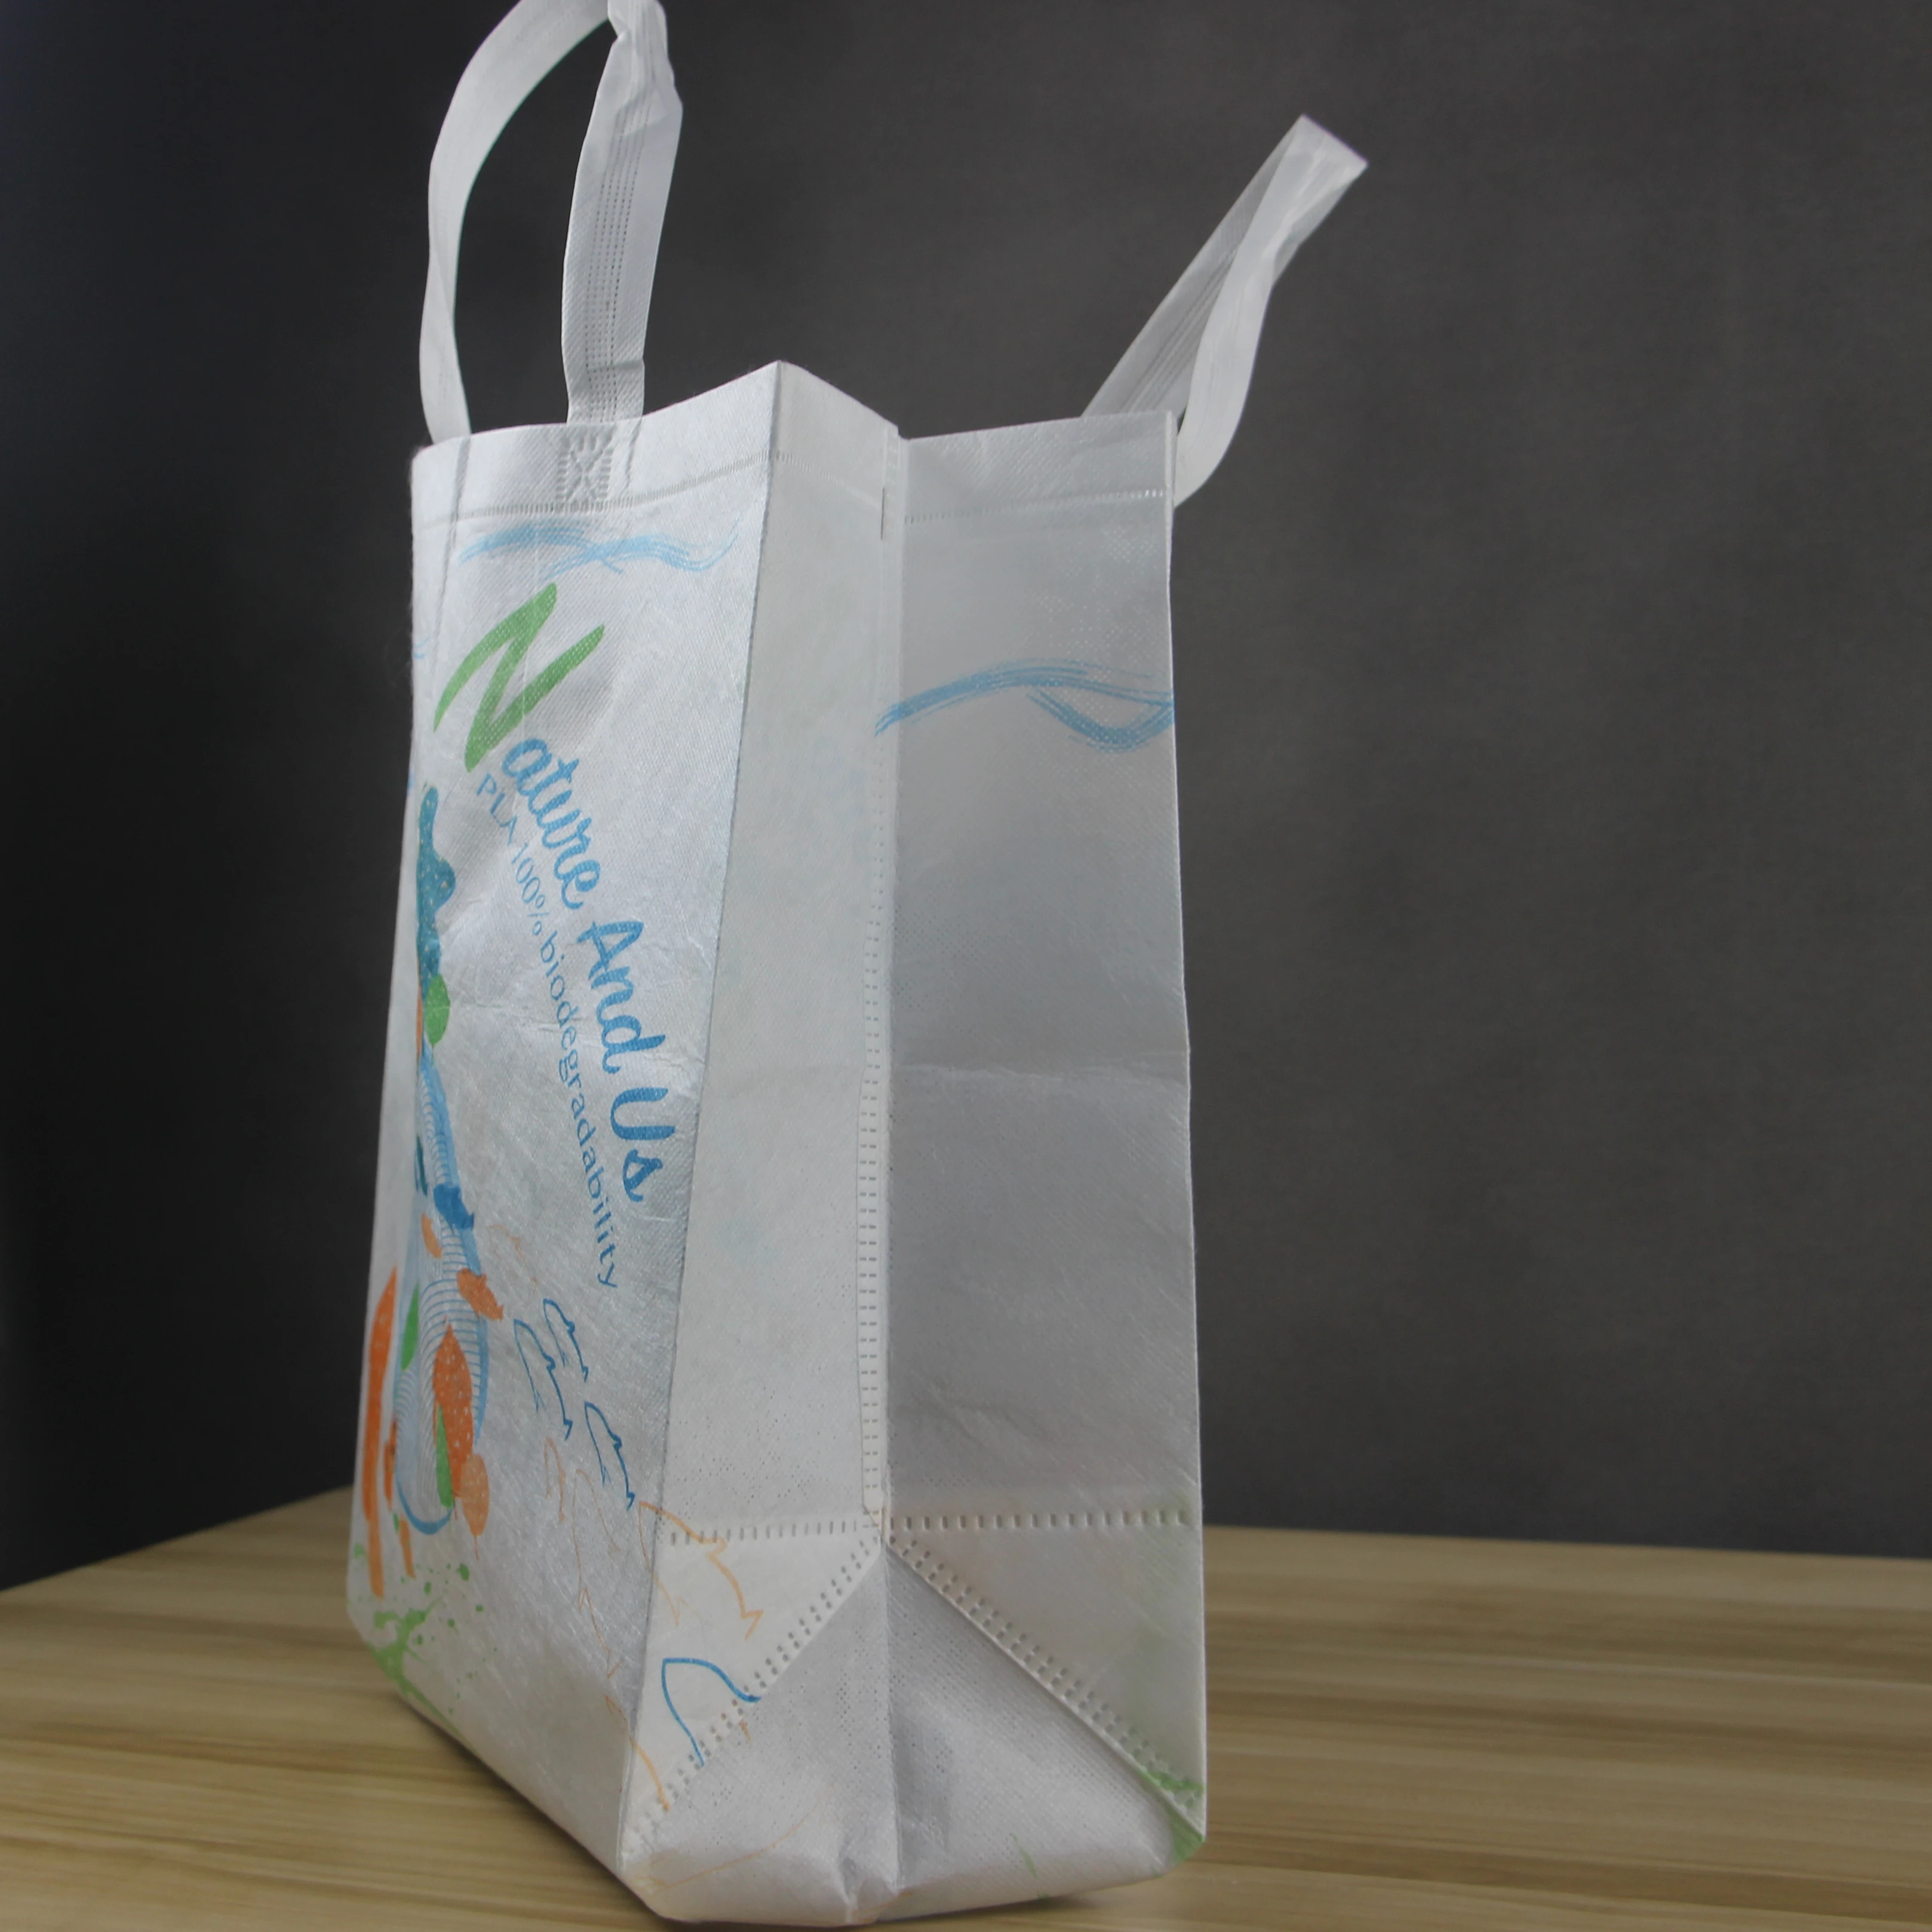 
2021 биоразлагаемый нетканый материал пла экологически чистые биоразлагаемые сумки пла 